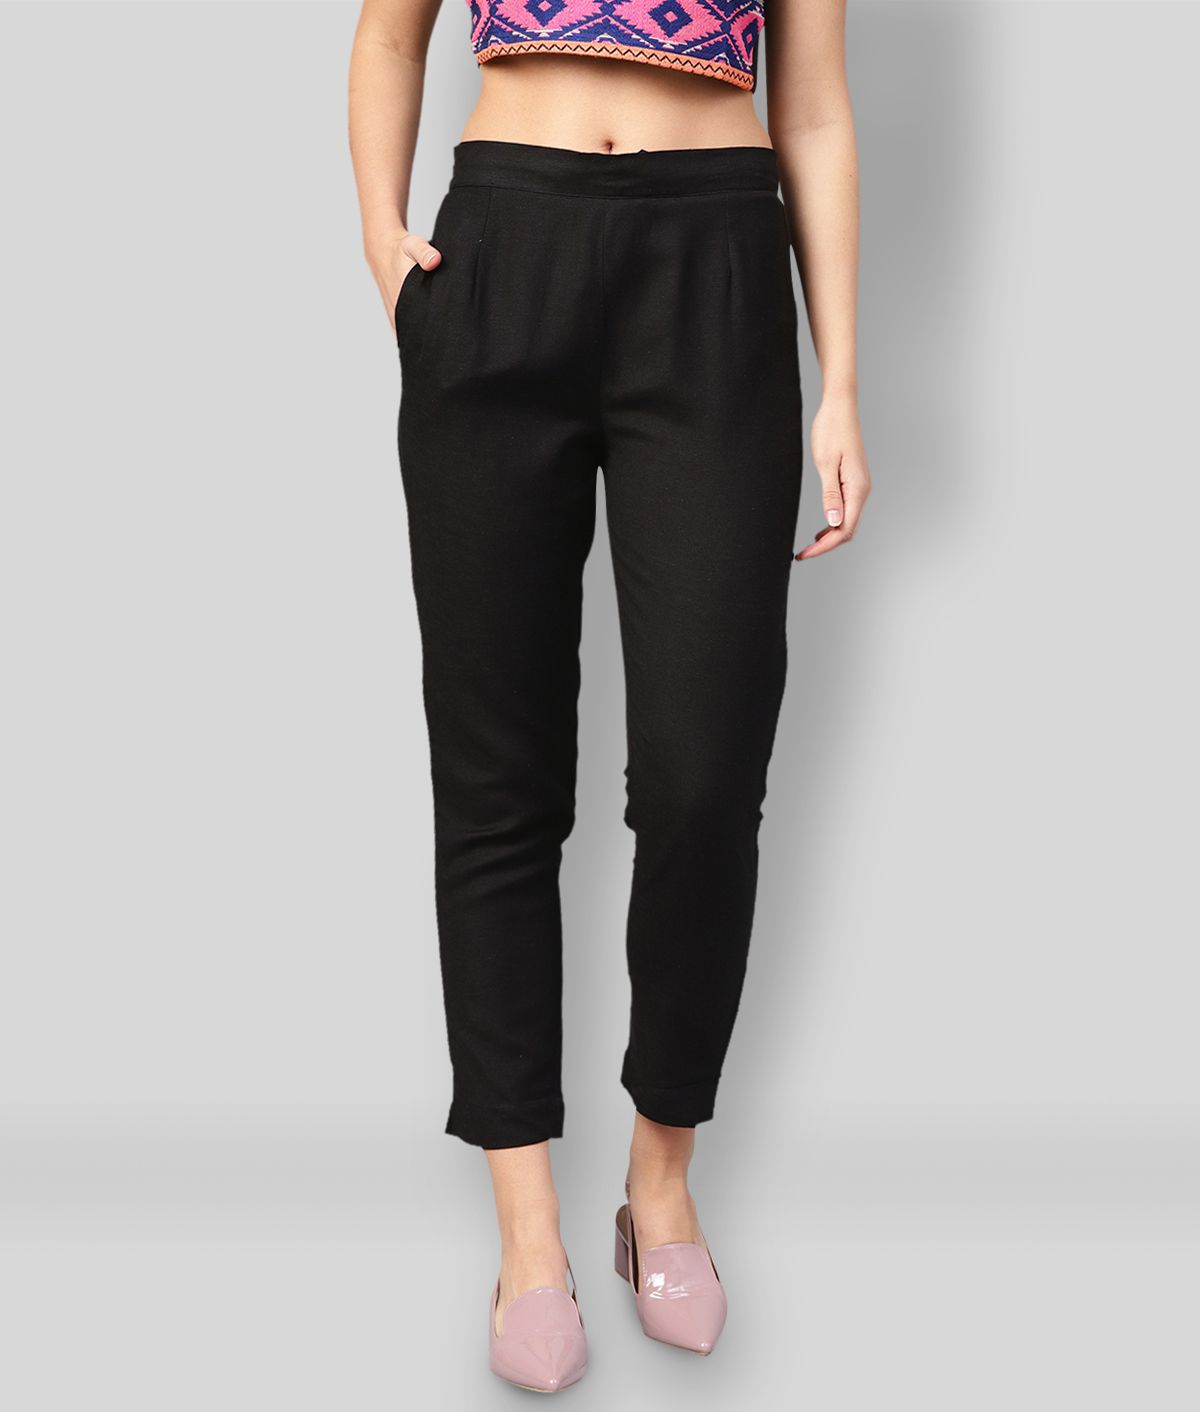     			Juniper - Black Rayon Slim Fit Women's Casual Pants  ( Pack of 1 )